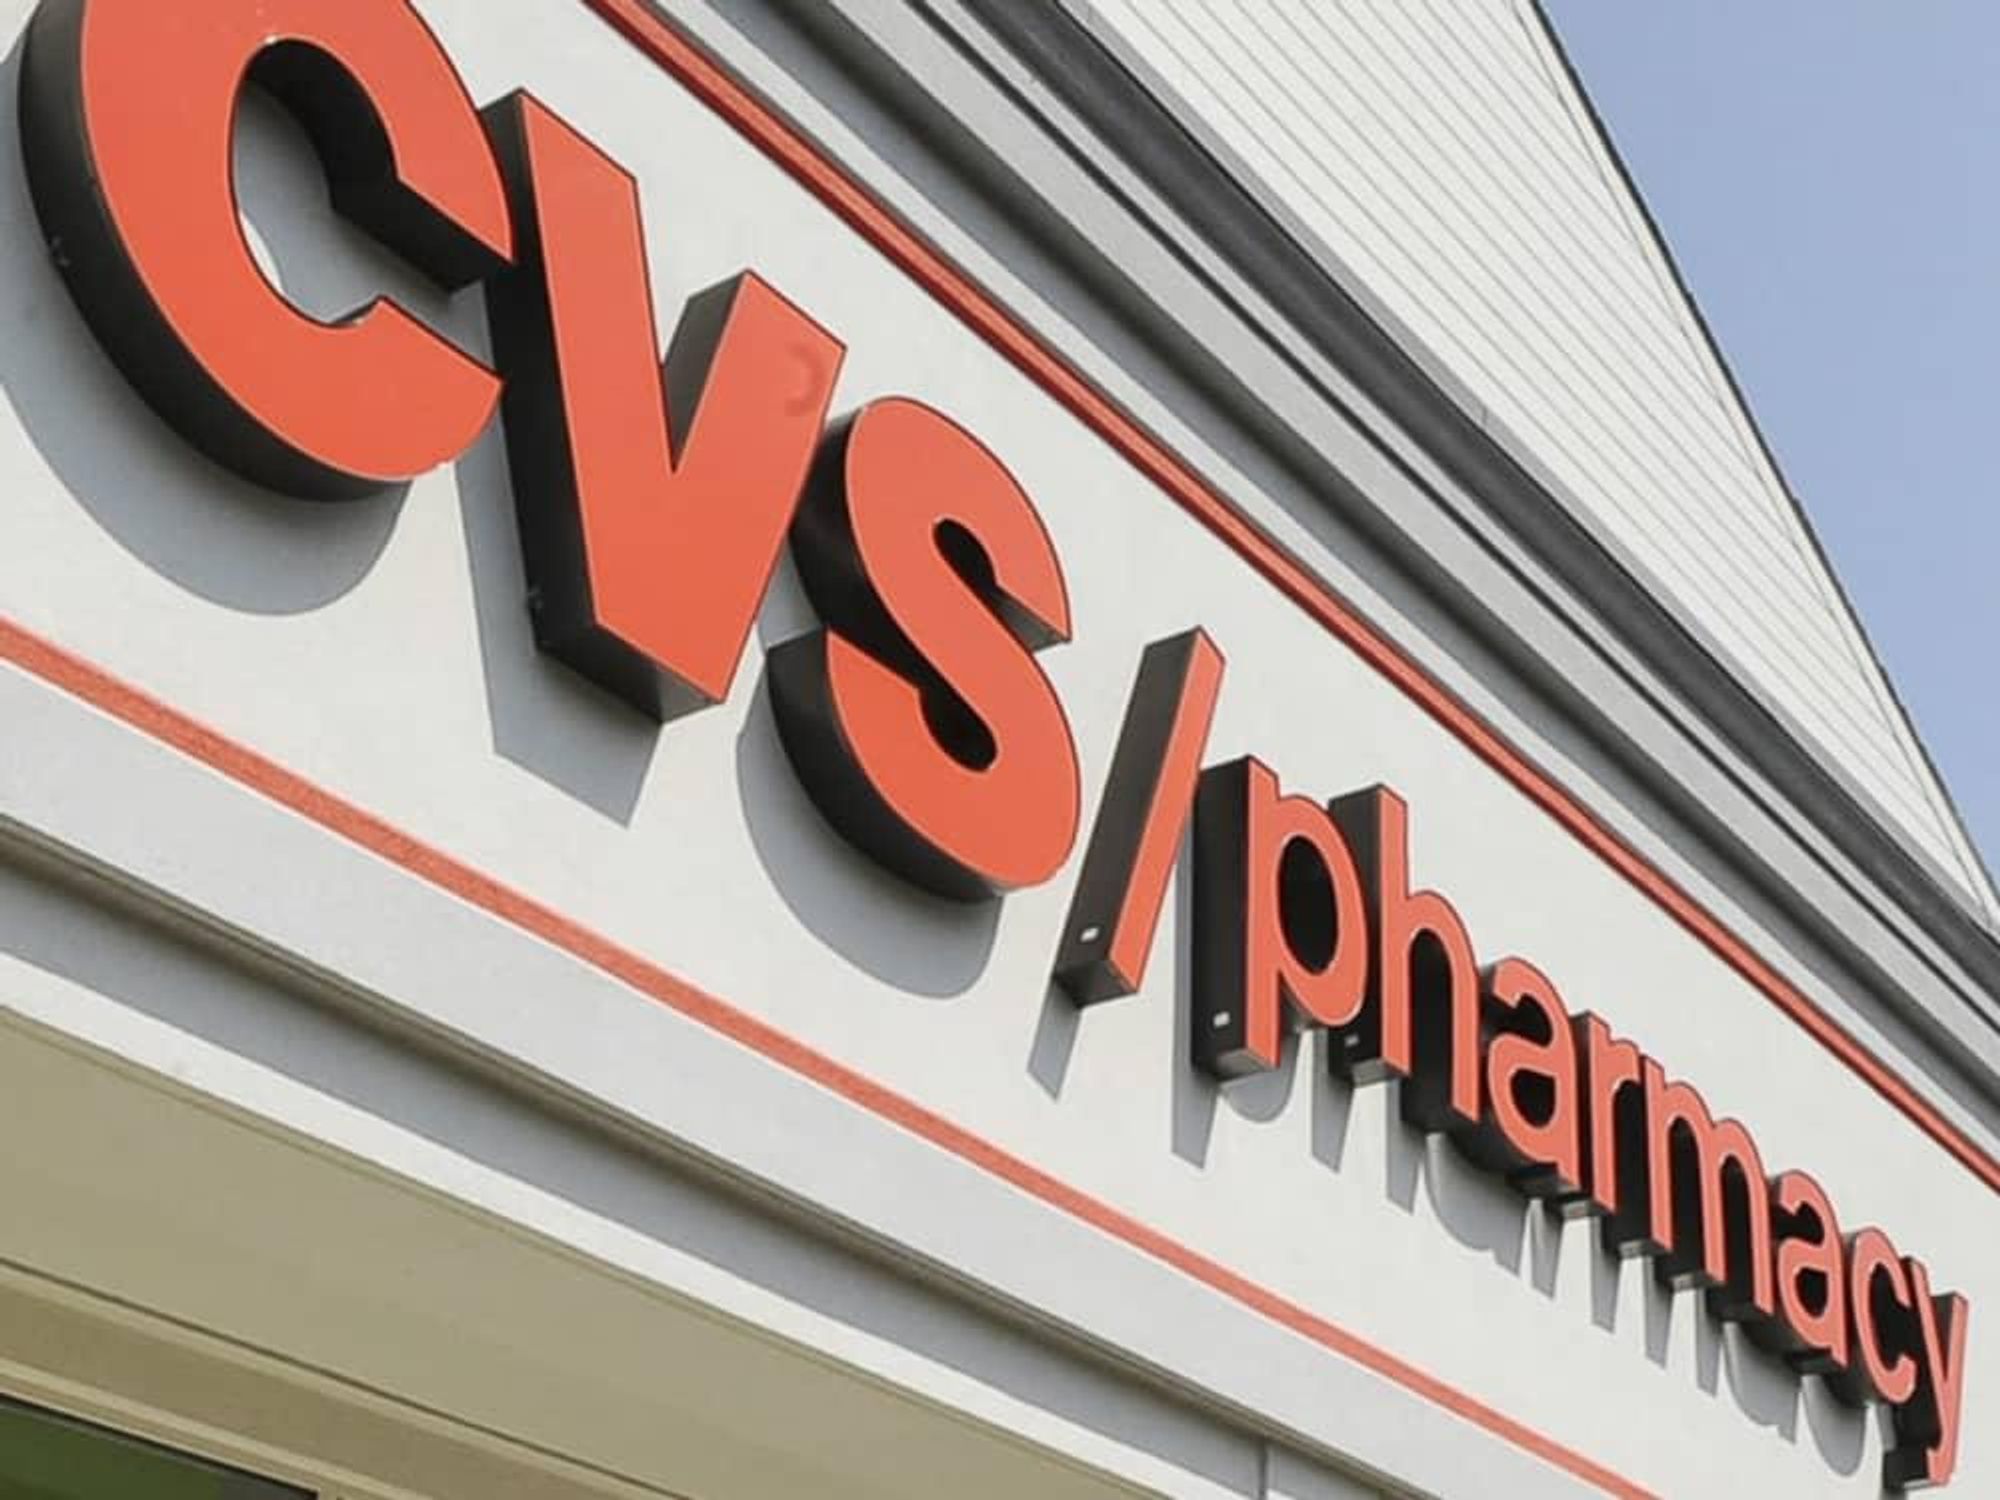 News_CVS_pharmacy_sign